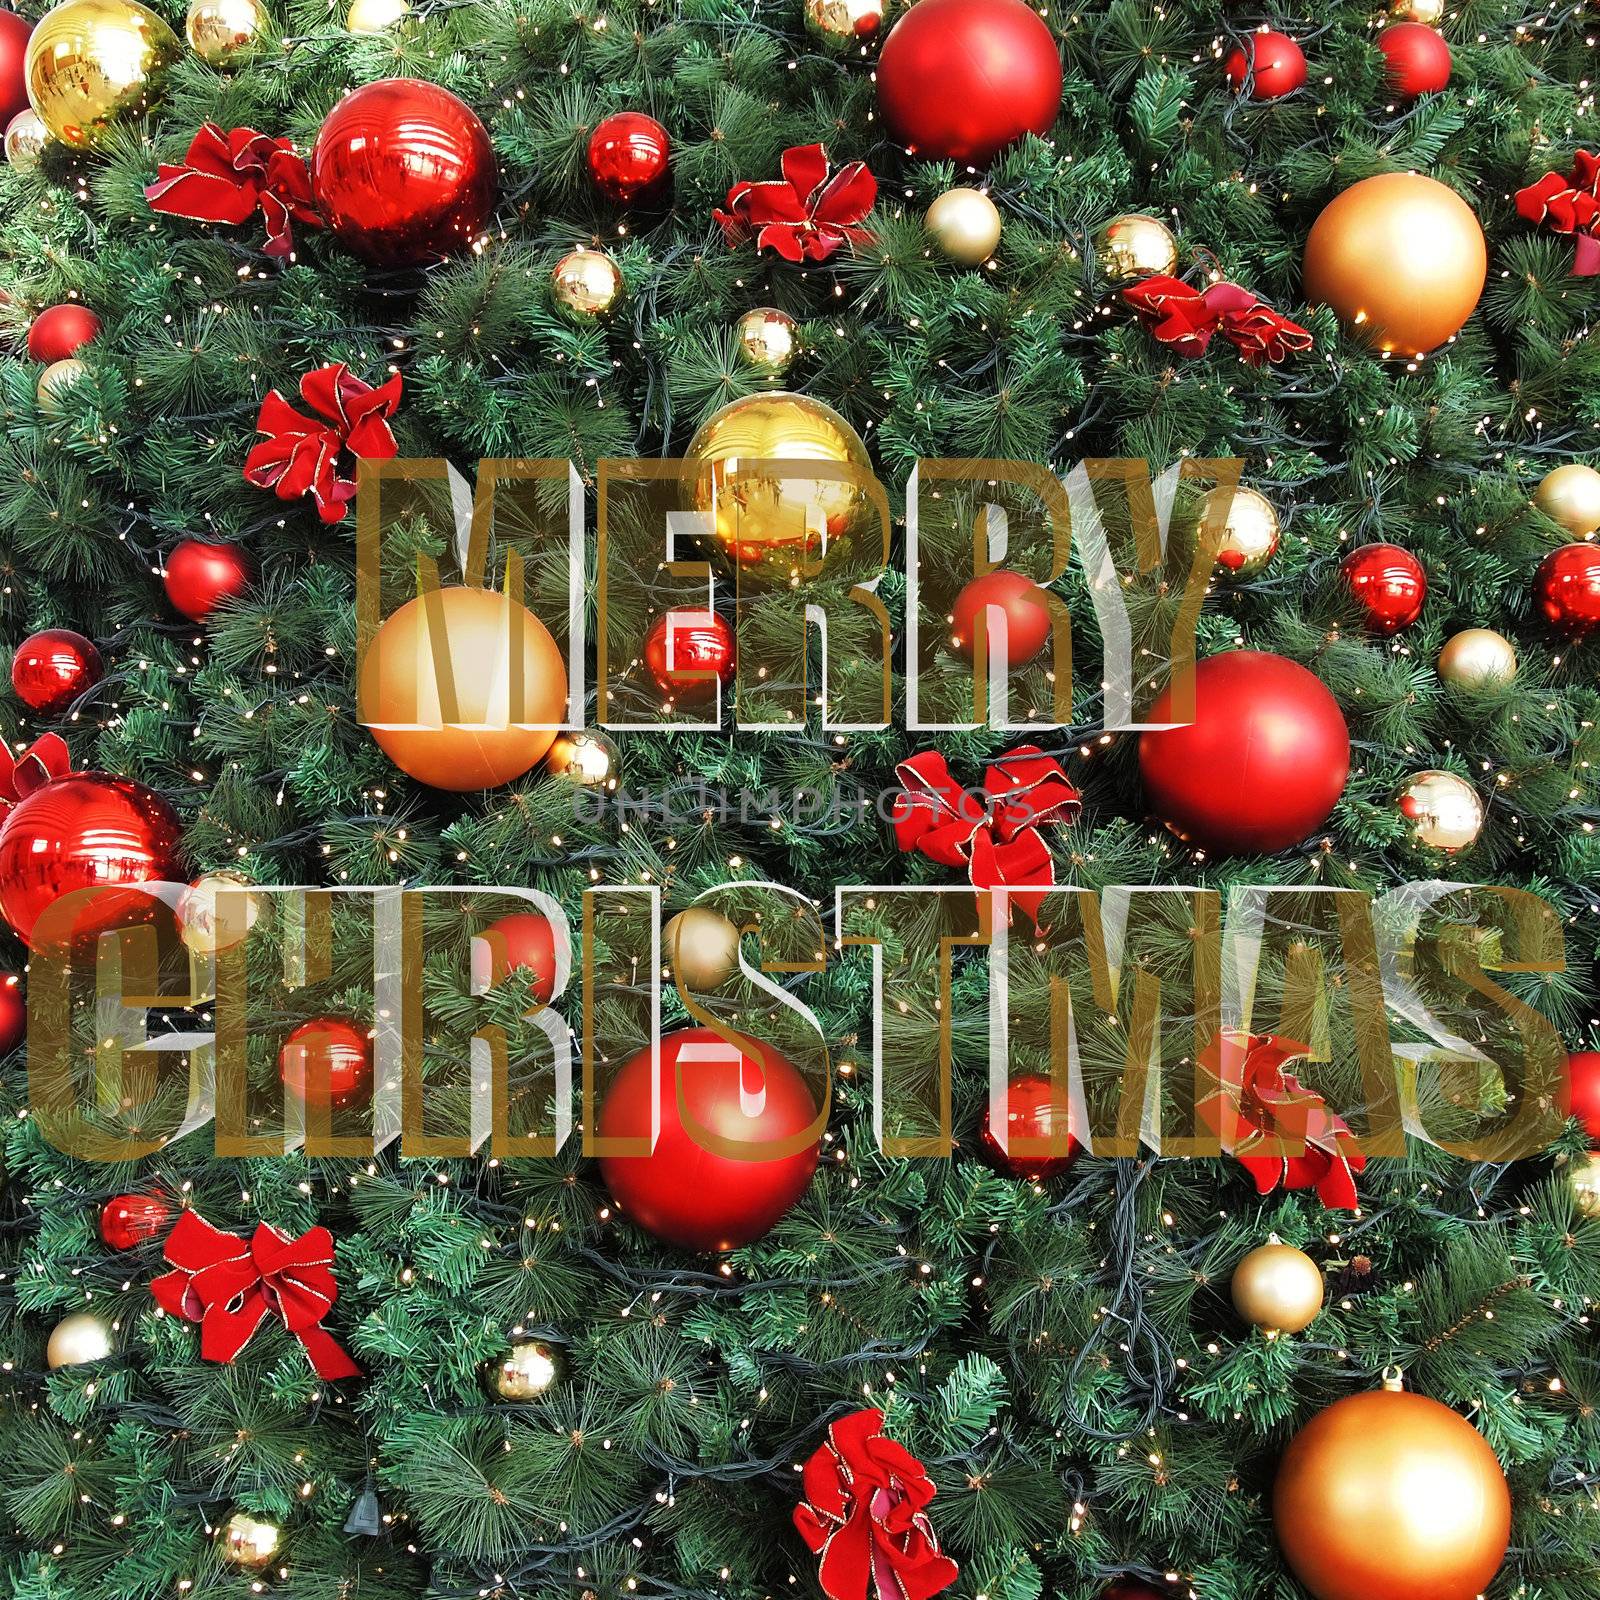 Merry Christmas with Decorative Christmas balls and Christmas tree